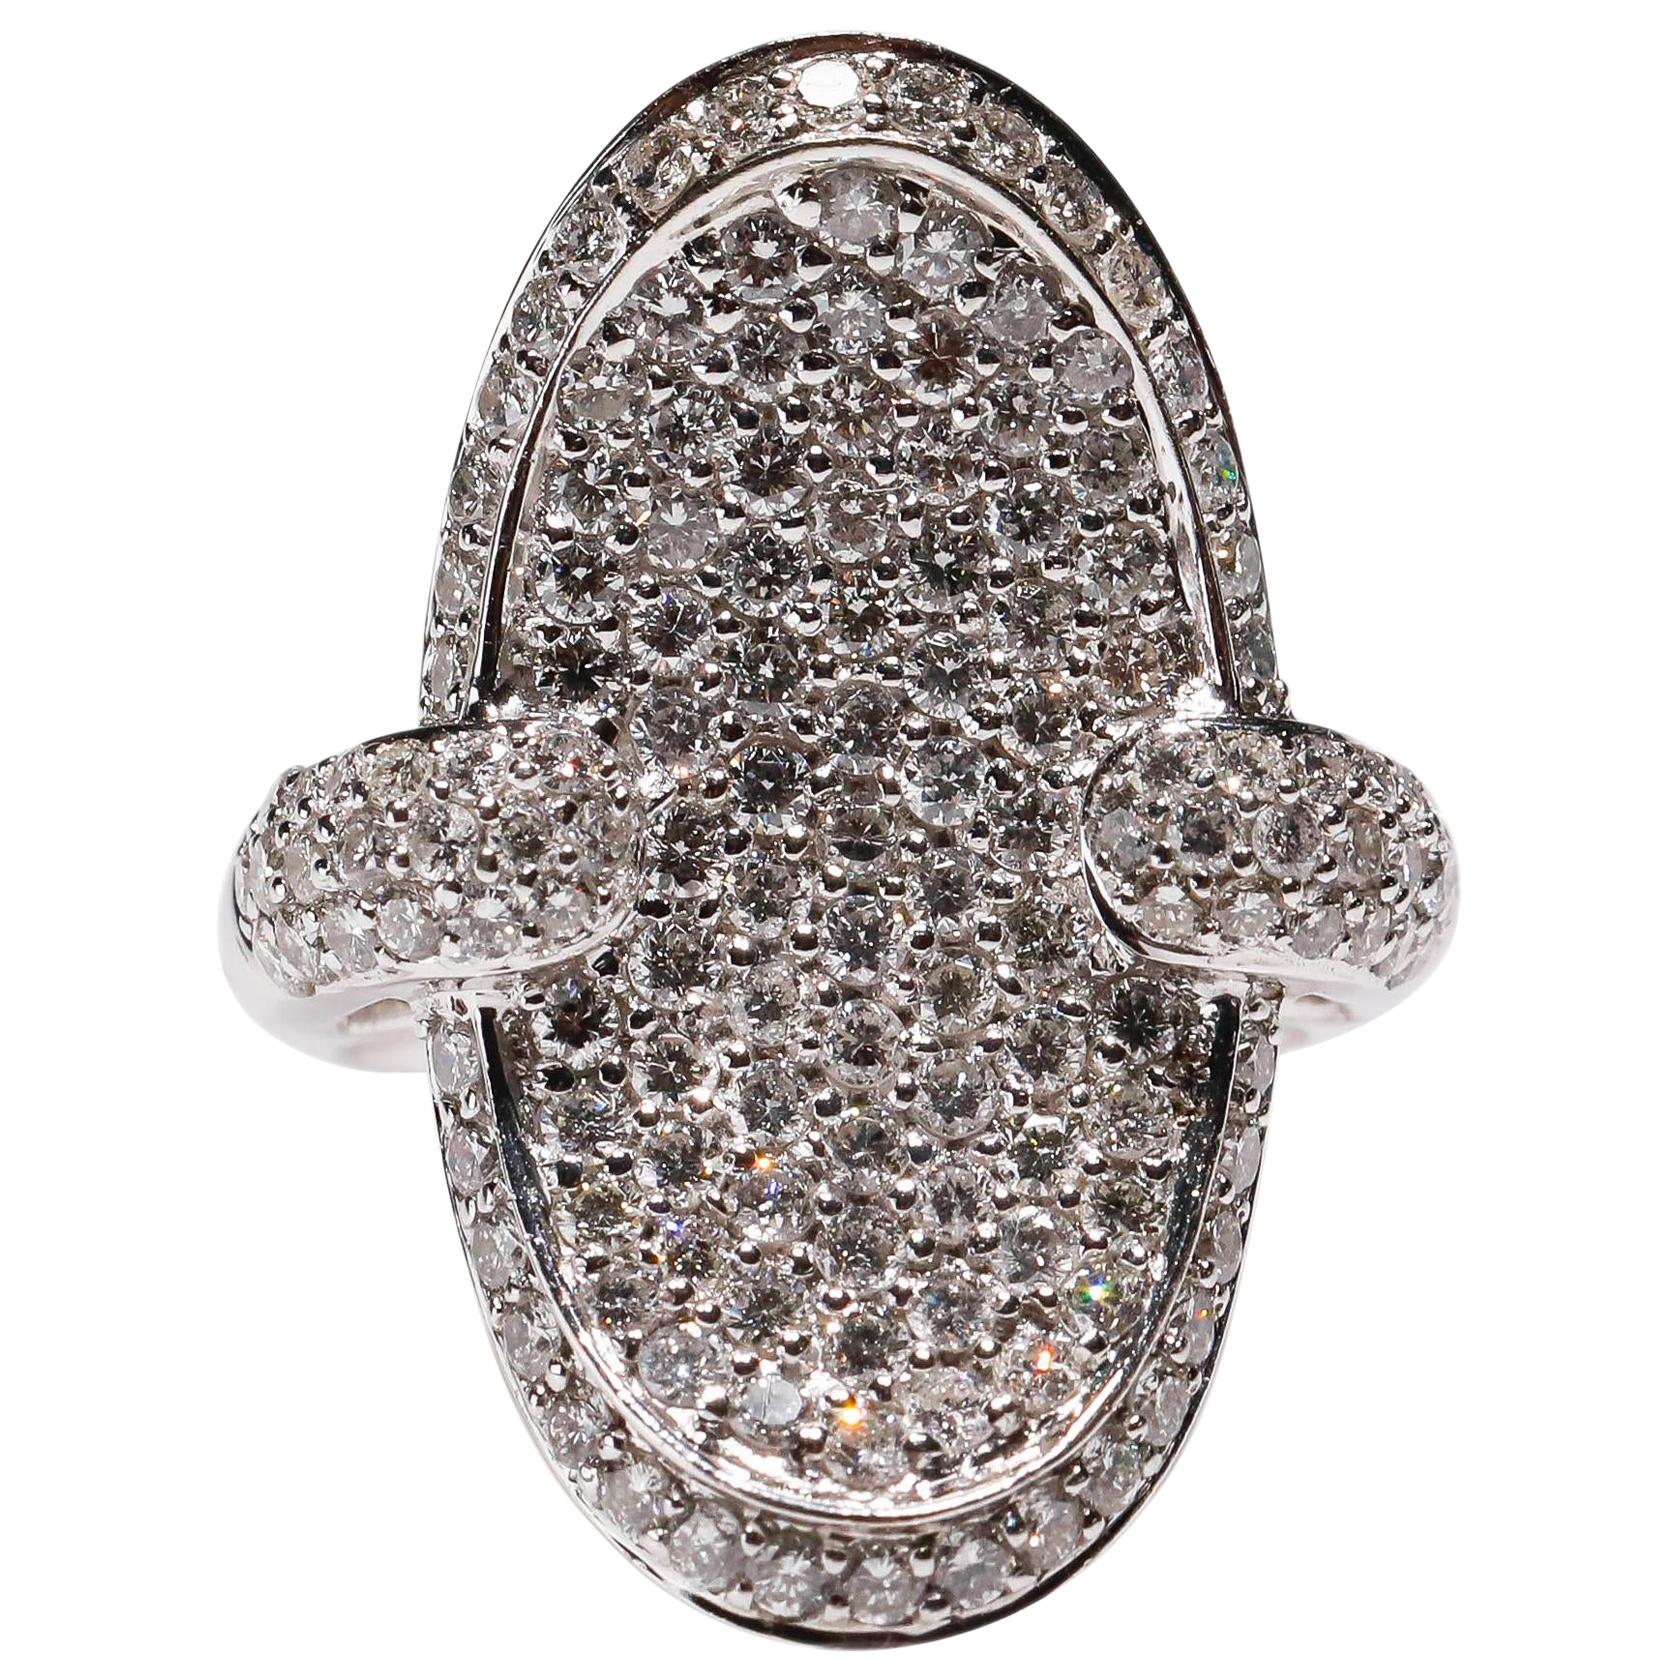 2.65 Karat Rundschliff Pavé Diamant 14 Karat Weißgold Verlobungsring Designer Ring

Dieses einzigartige Design aus 14-karätigem Weißgold präsentiert einen weißen Diamanten mit rundem Schliff (2,65 TCW), der in massivem Weißgold gefasst und auf